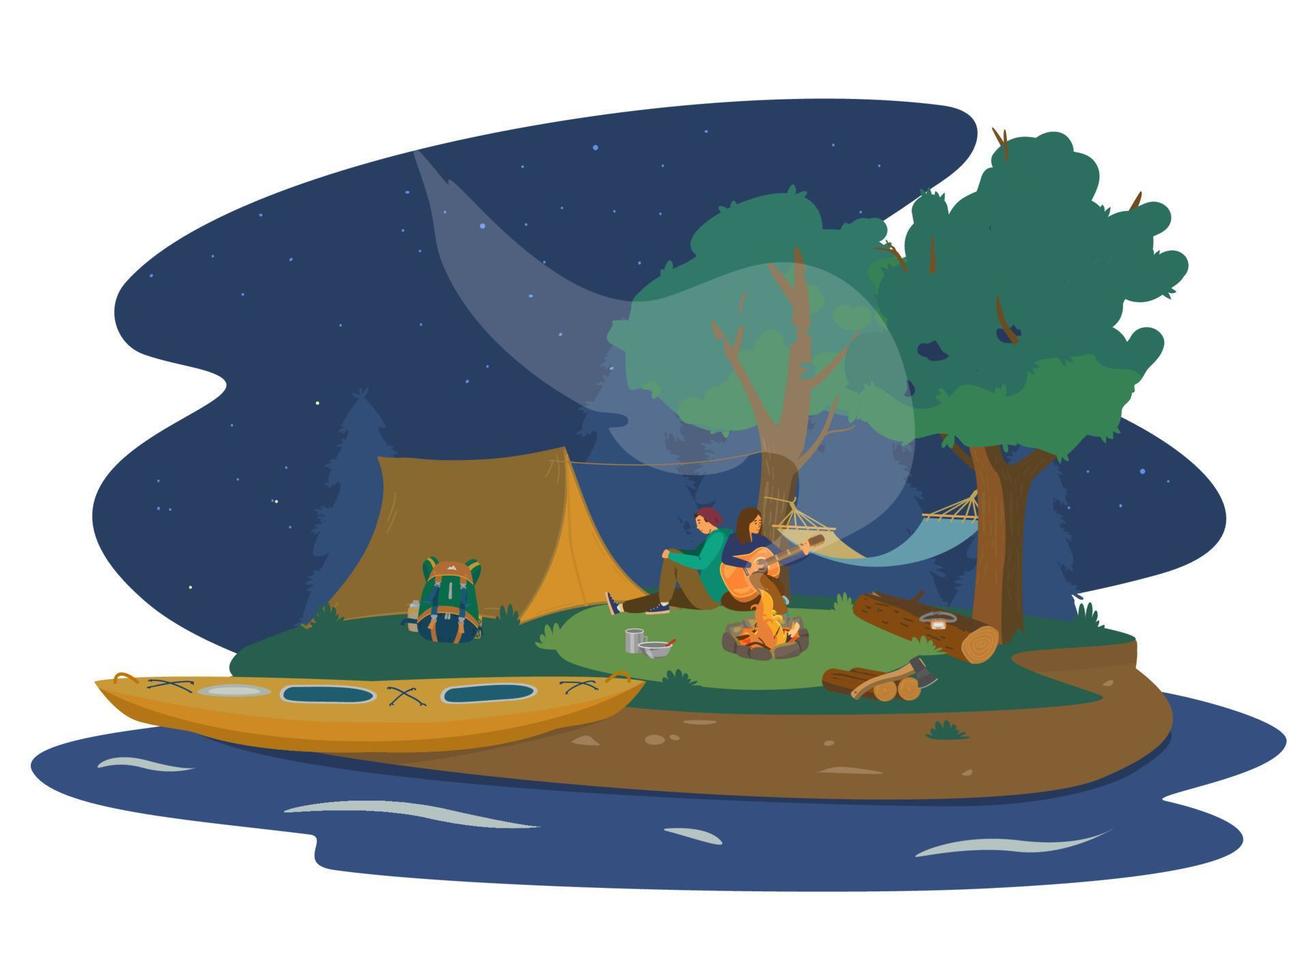 camping de nuit près de la rivière avec un couple près d'un feu de camp jouant de la guitare. kayak, tente, sac à dos, hamac, feu de camp, bois de chauffage, hache. paysage de nuit. illustration vectorielle de dessin animé plat. vecteur